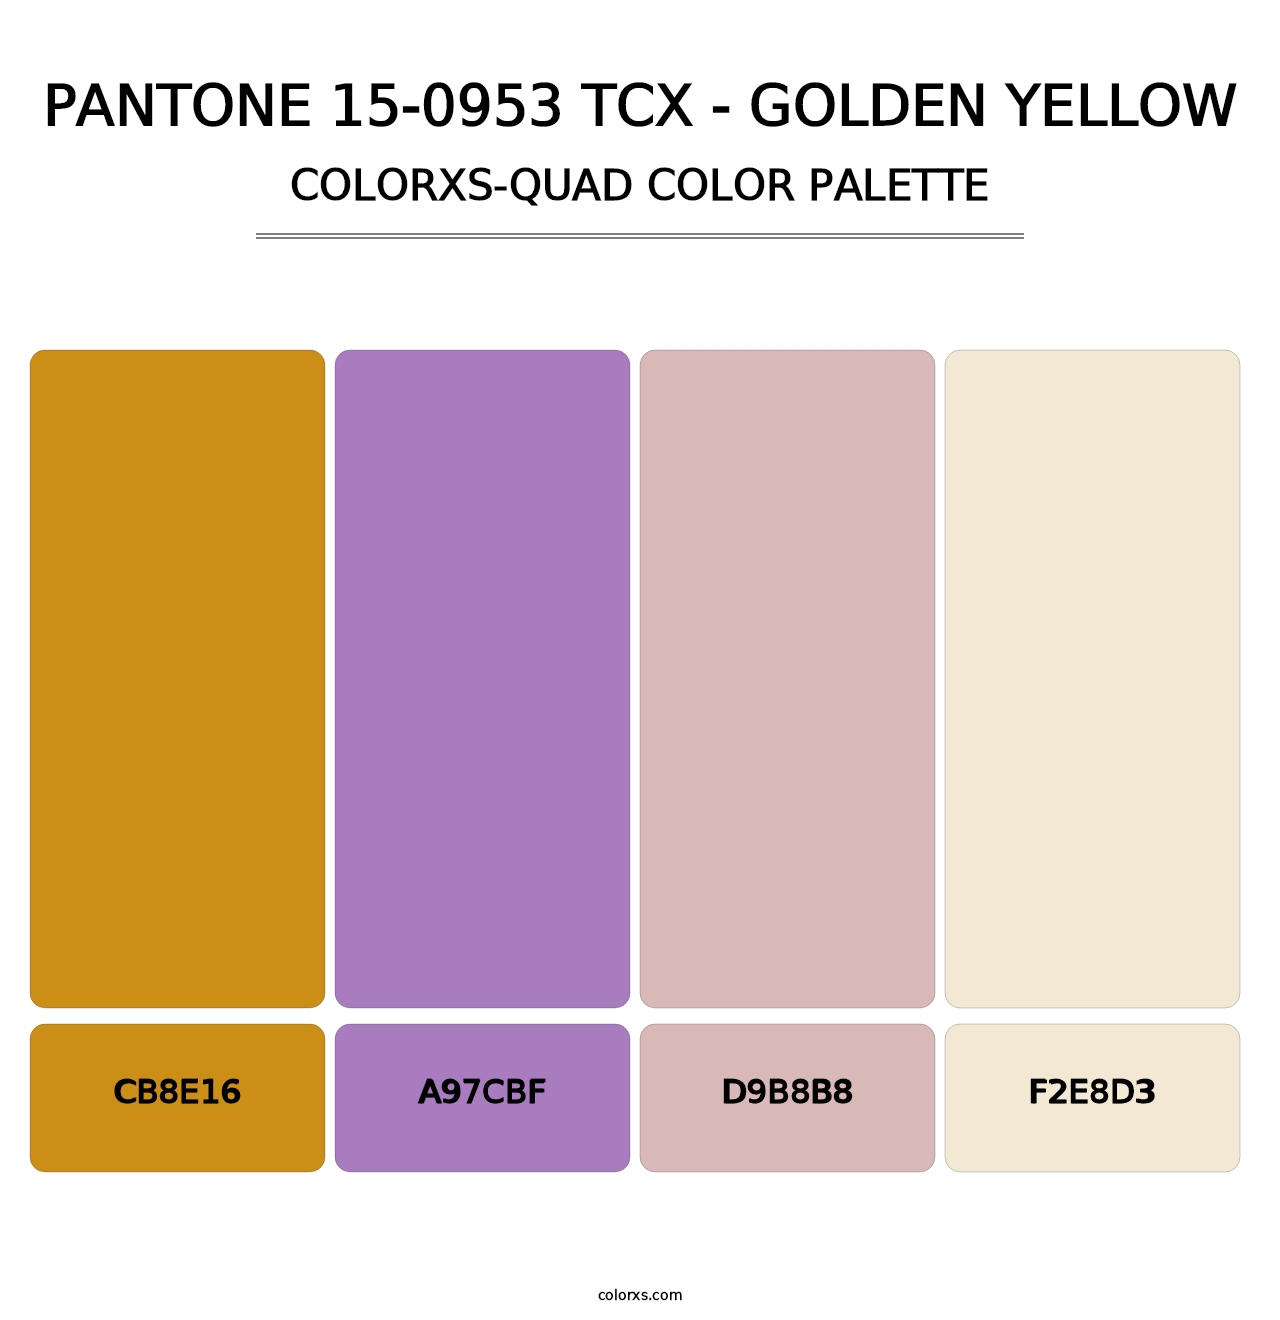 PANTONE 15-0953 TCX - Golden Yellow - Colorxs Quad Palette